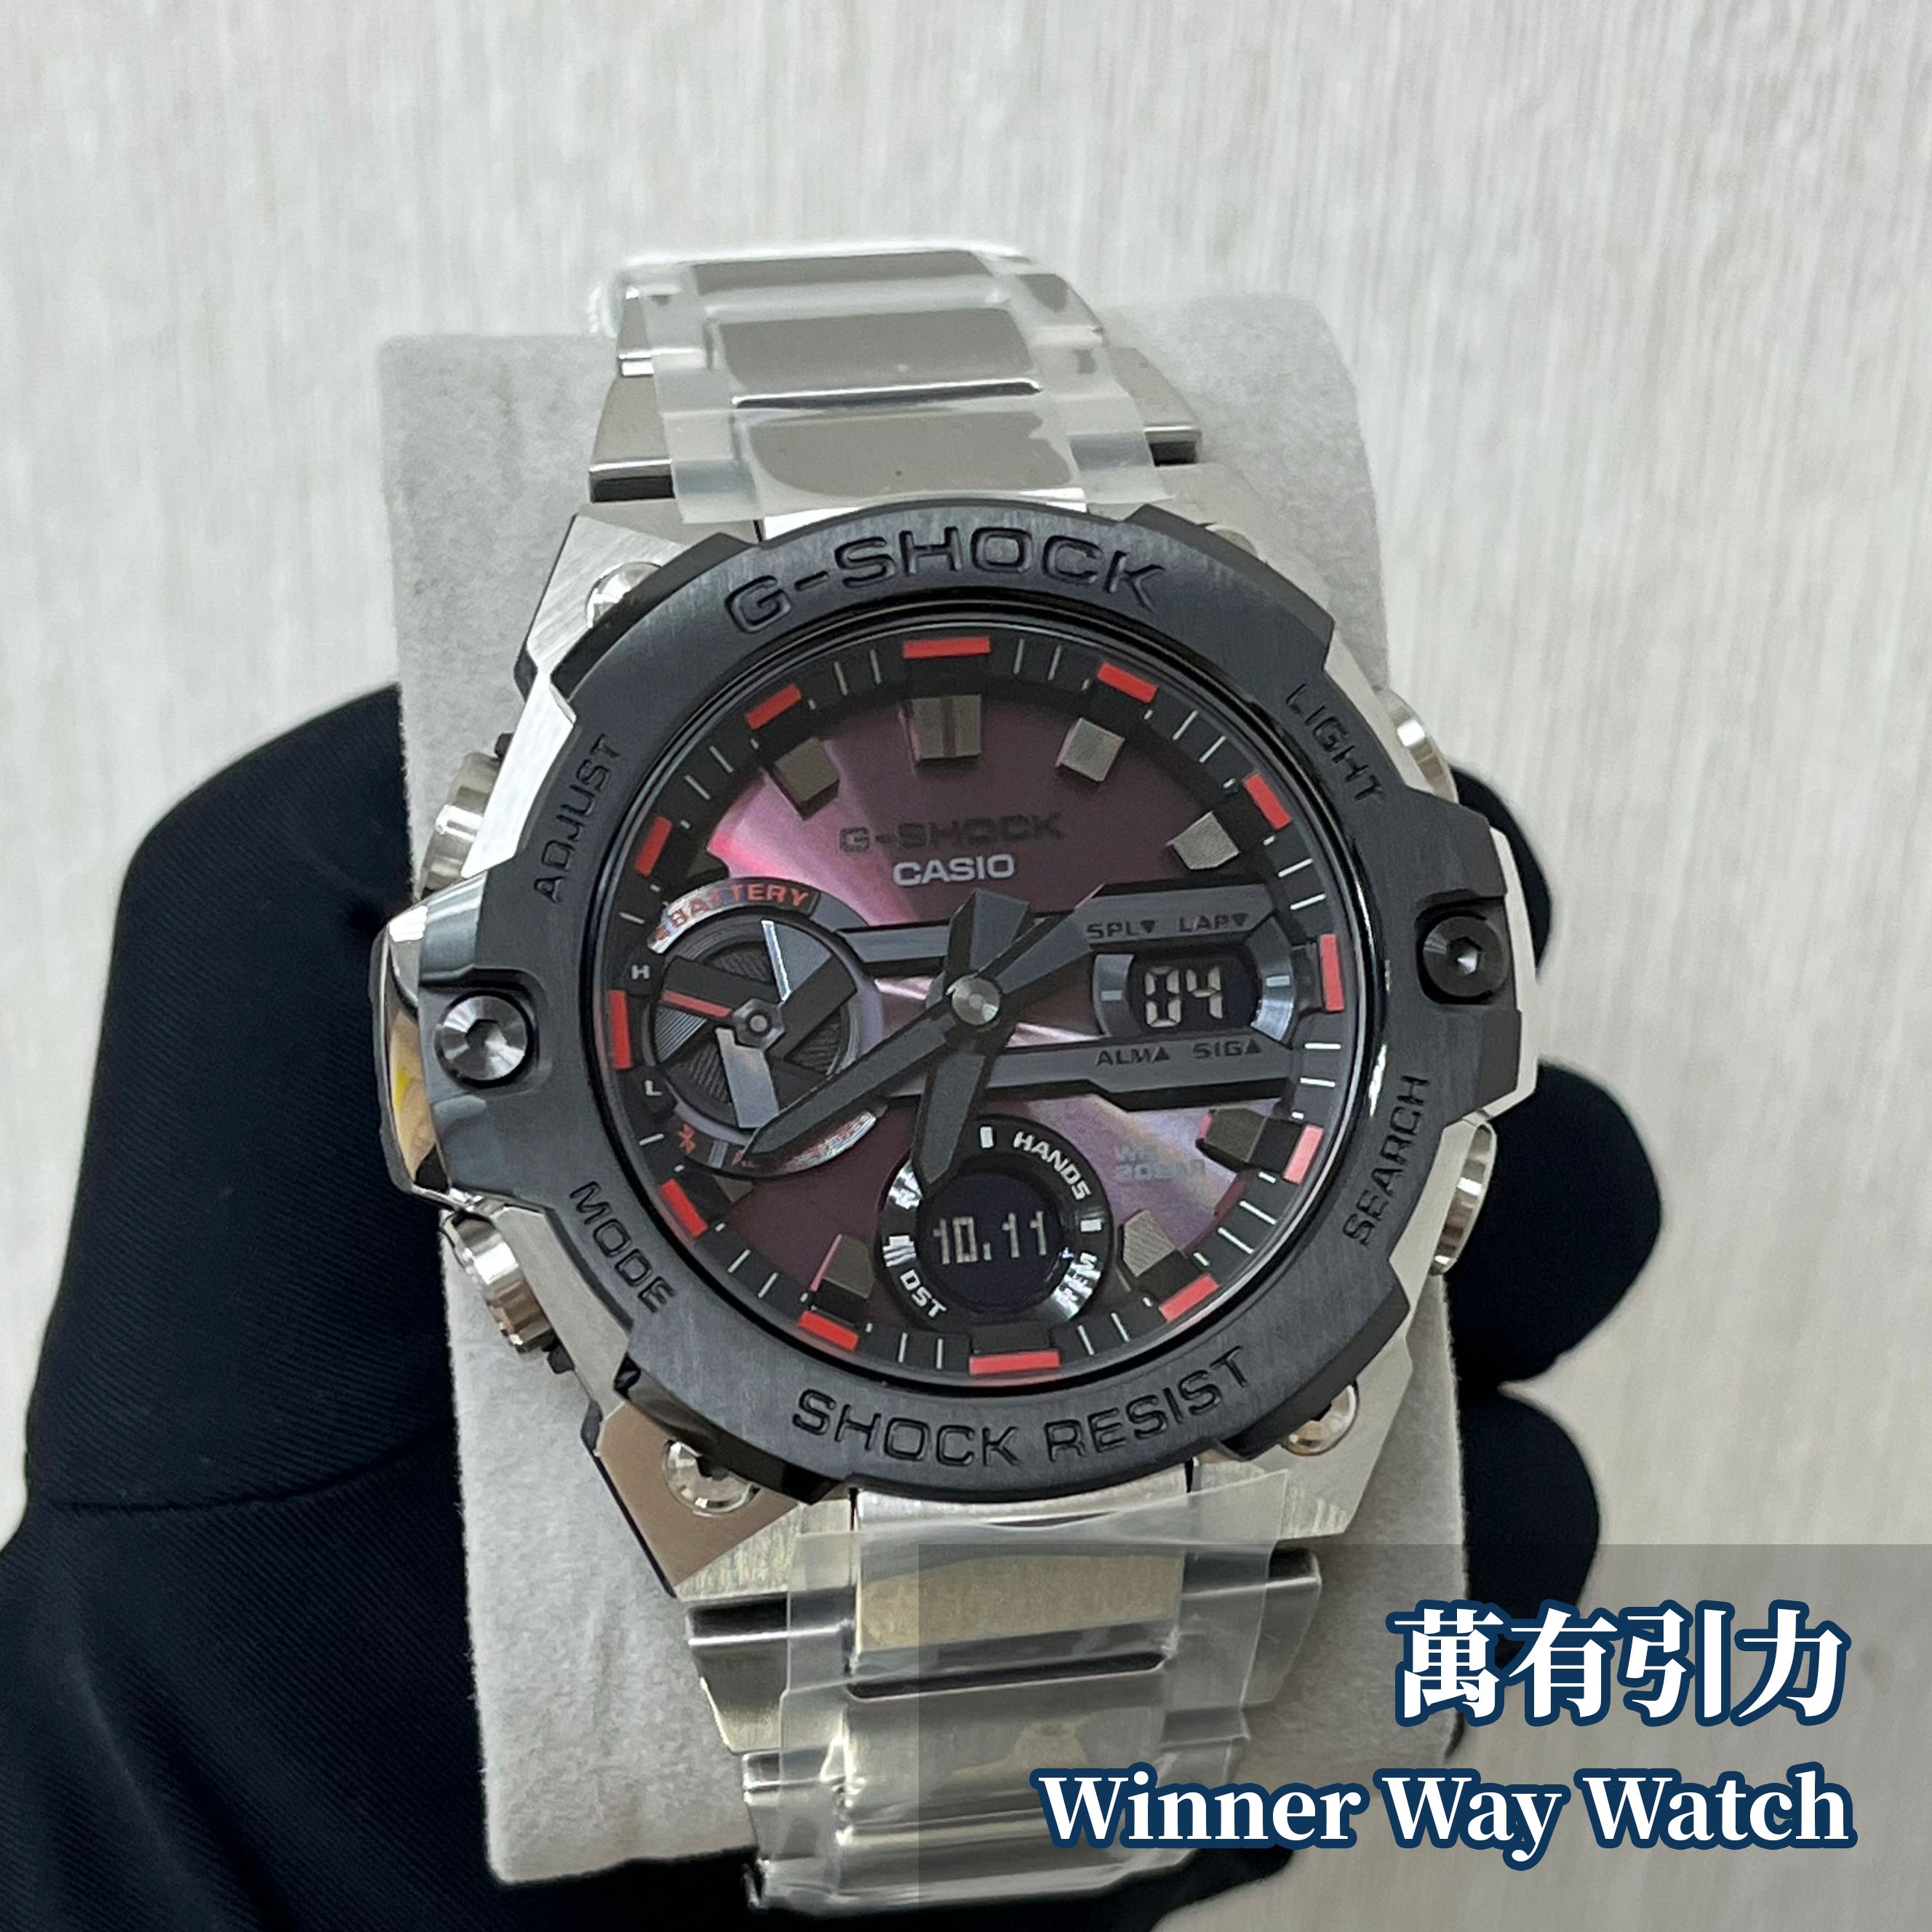 Casio G-Shock GST-B400AD-1A4 | Winner Way Watch